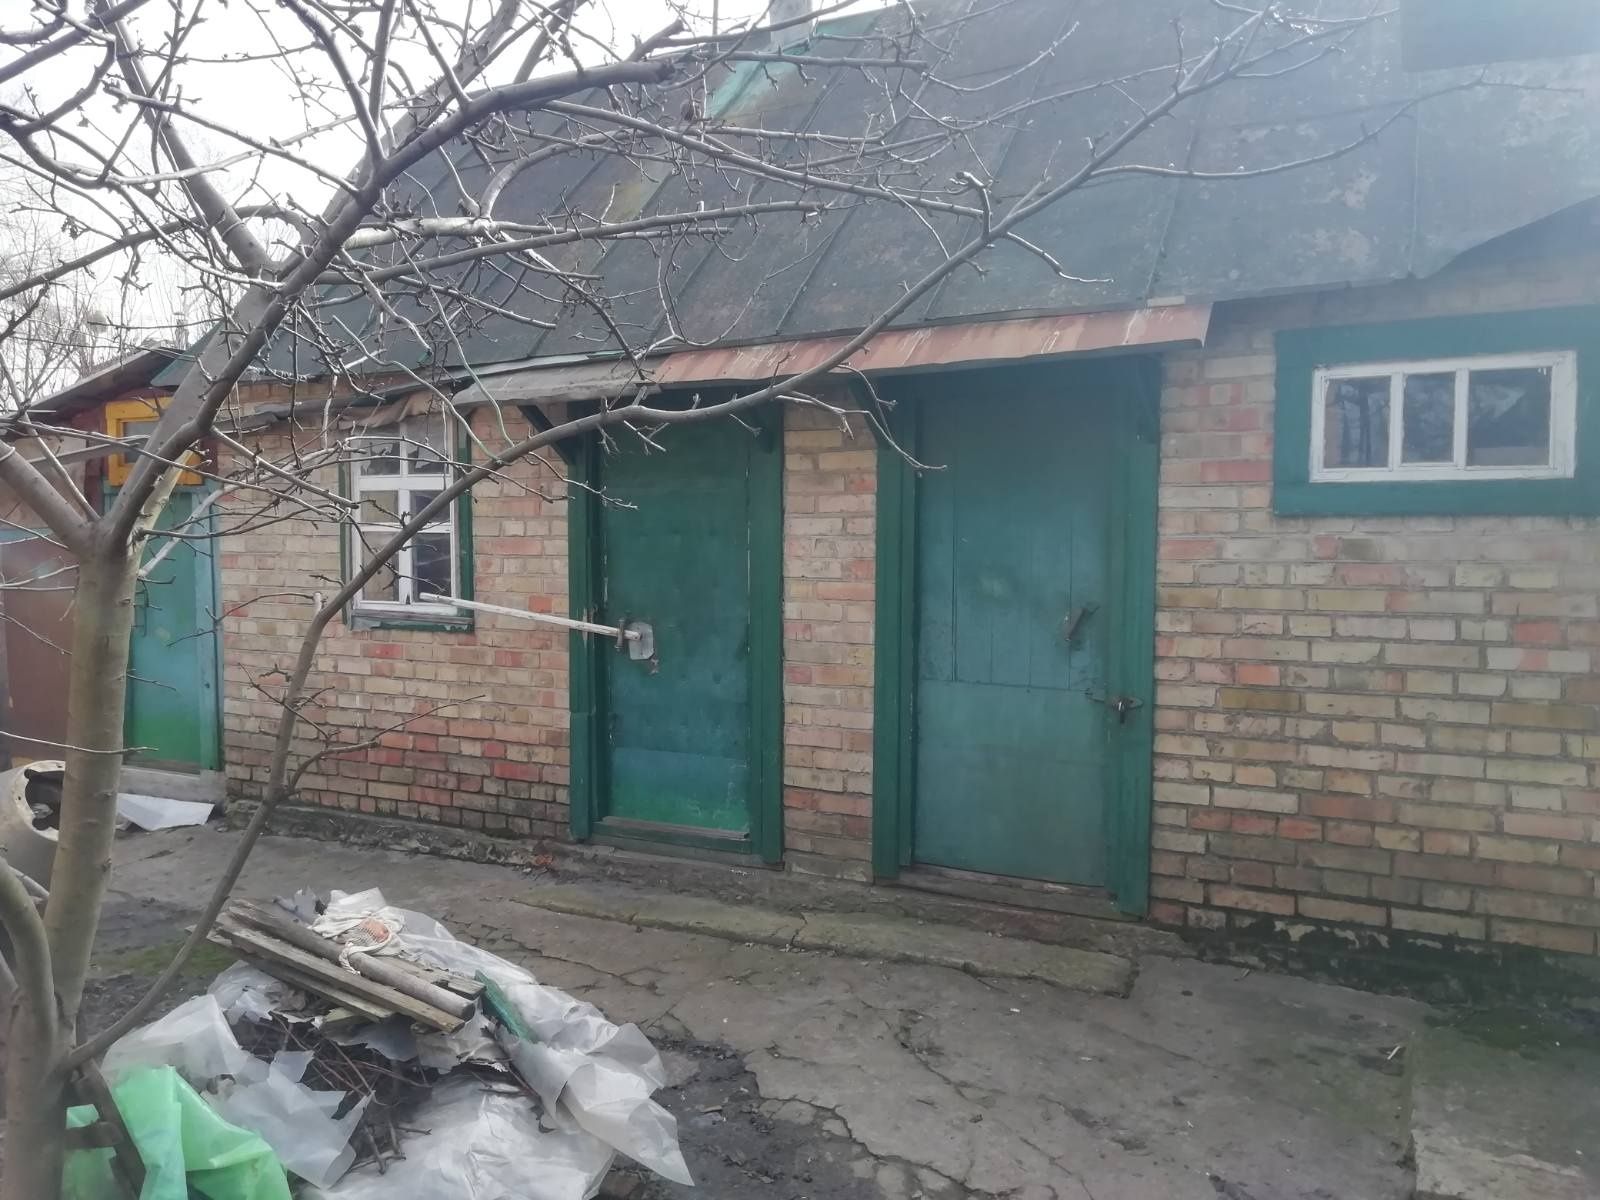 Продам окремий будинок Калинівка Фастівський район